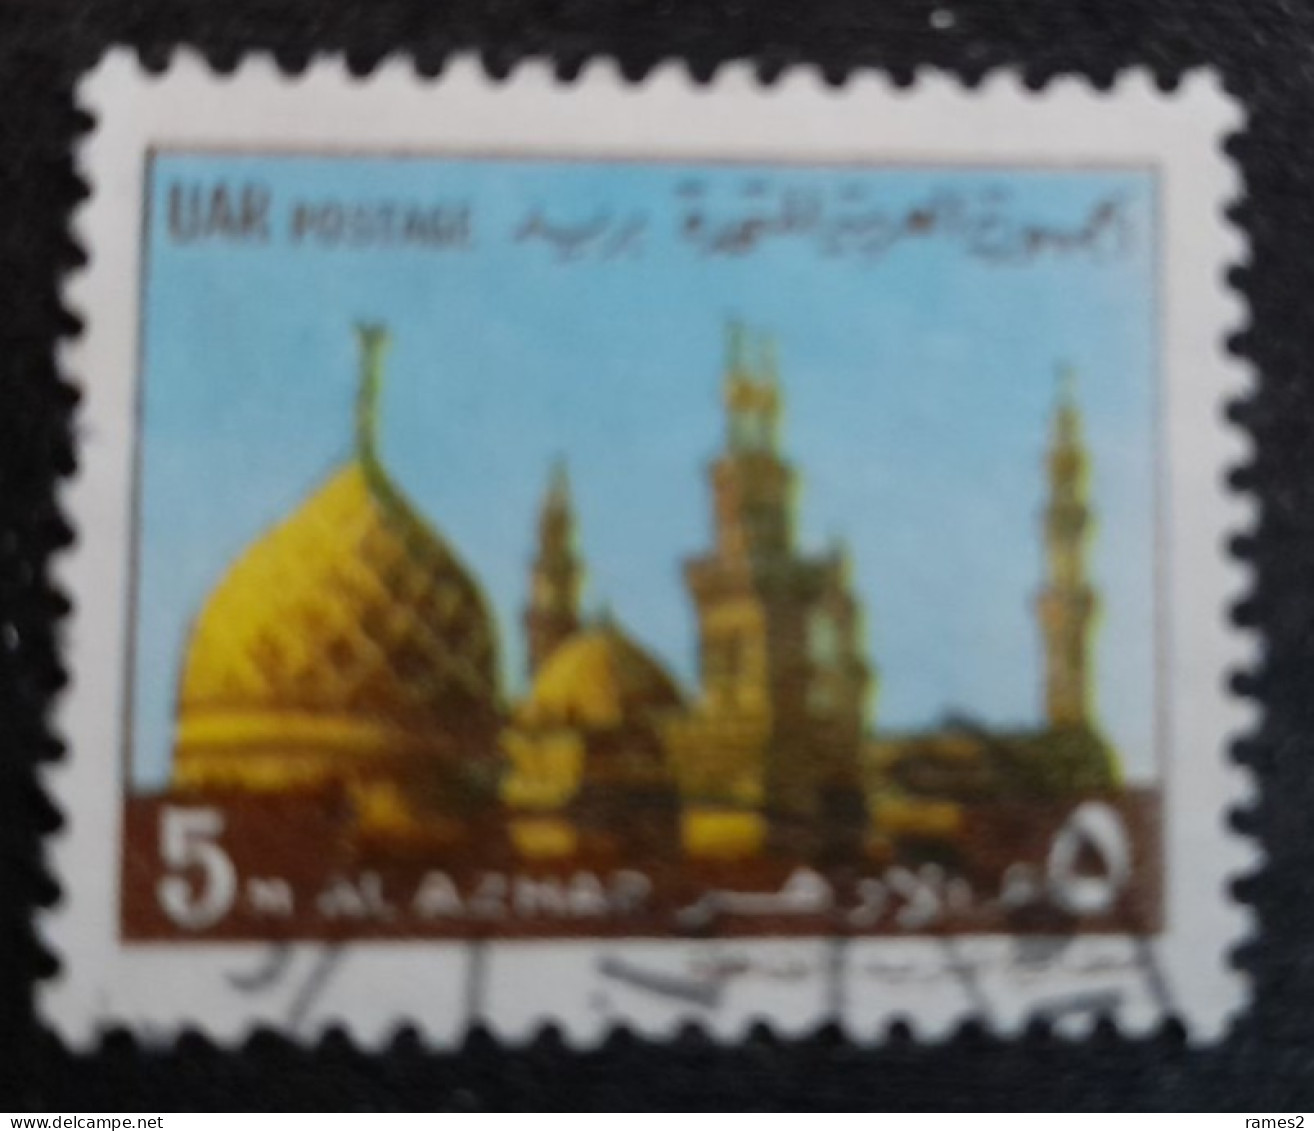 Egypte > 1953-... République > 1970-79 > Oblitérés N° 815 - Used Stamps